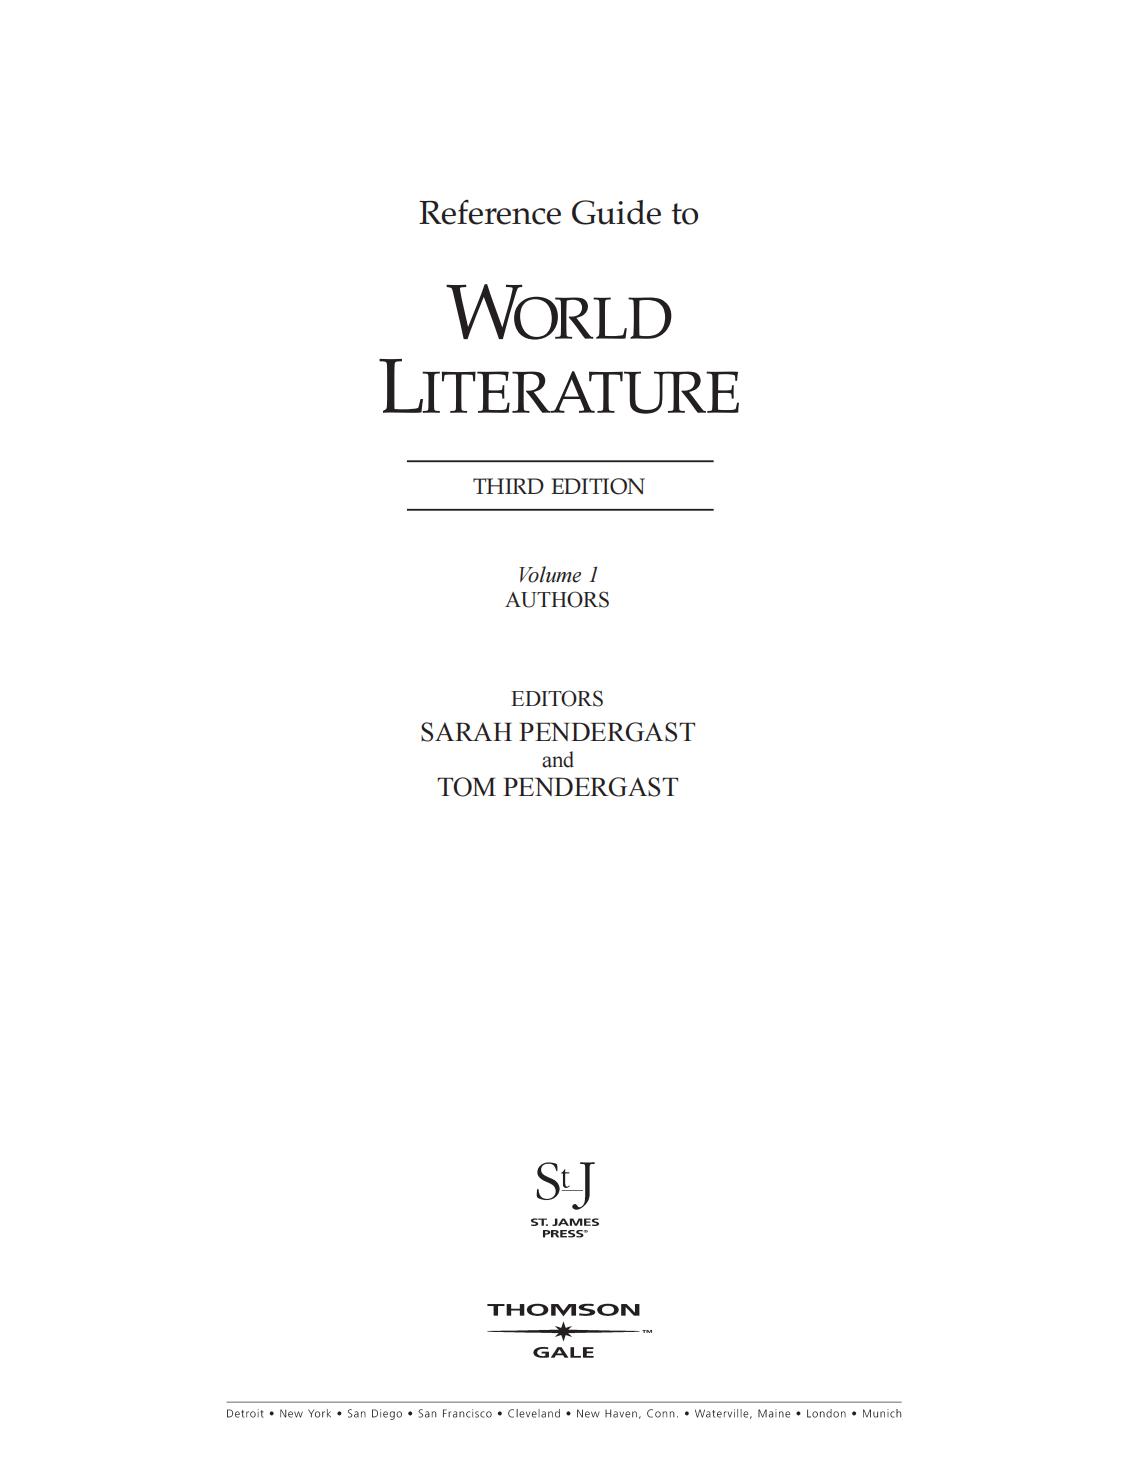 《世界文学参考指南》（第三版） REFERENCE GUIDE TO WORLD LITERATURE, 3rd EDITION 下载